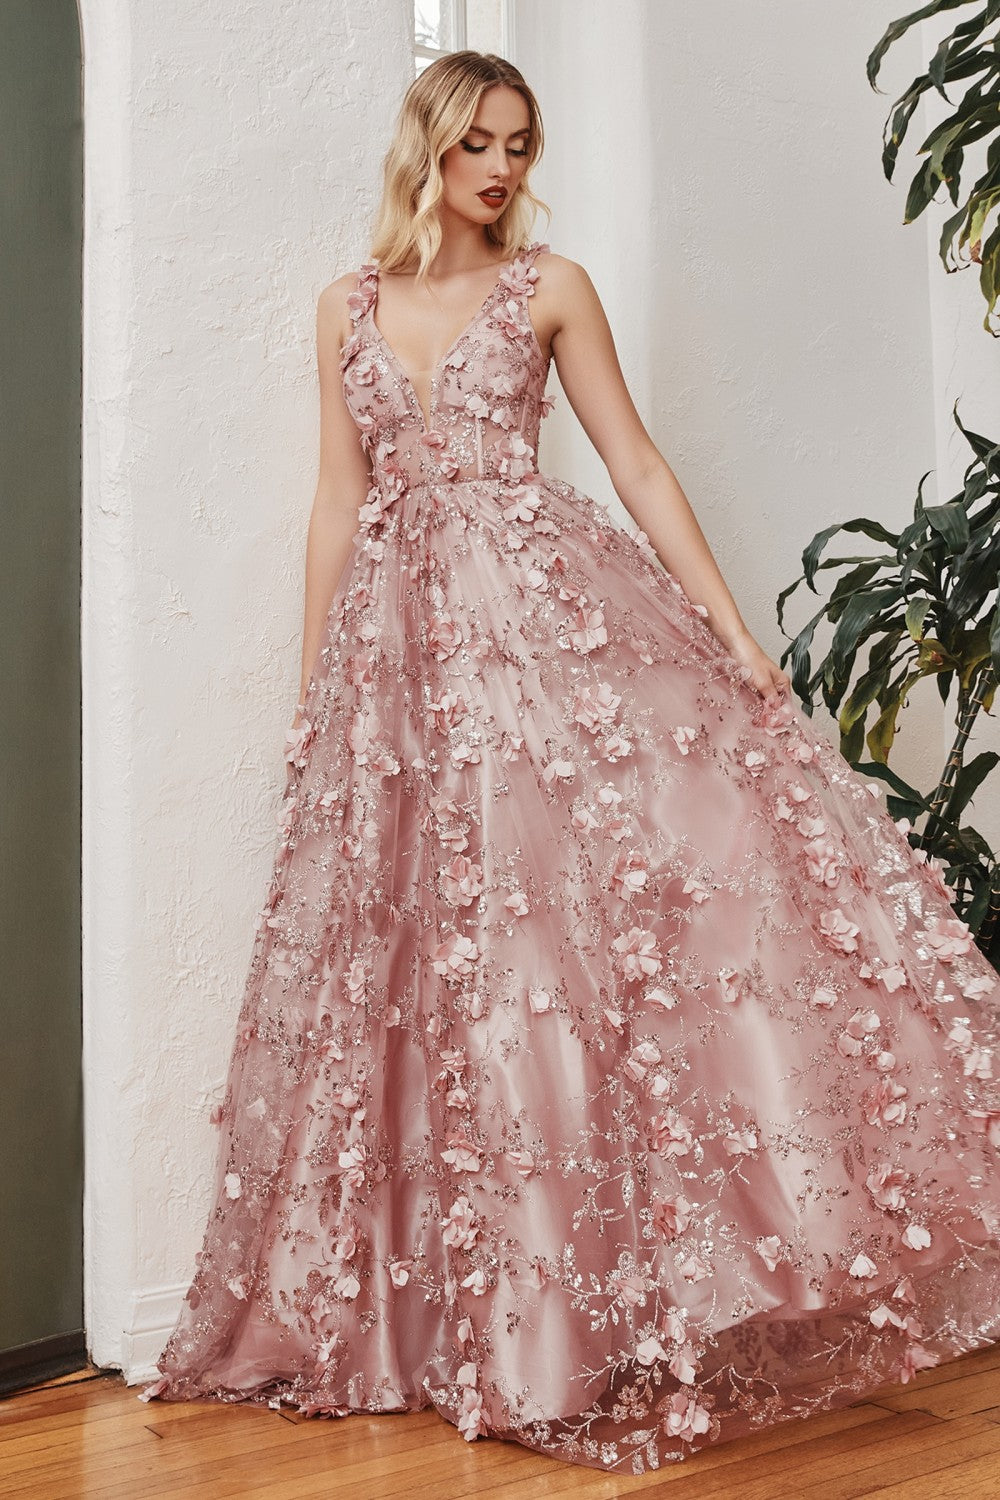 Pink Flower Ball Gown Wedding Dress Bridal Dress Robe De Mariage Mariee  Princesa Wedding Dresses 2019 Real Photo HA2043 - OnshopDeals.Com